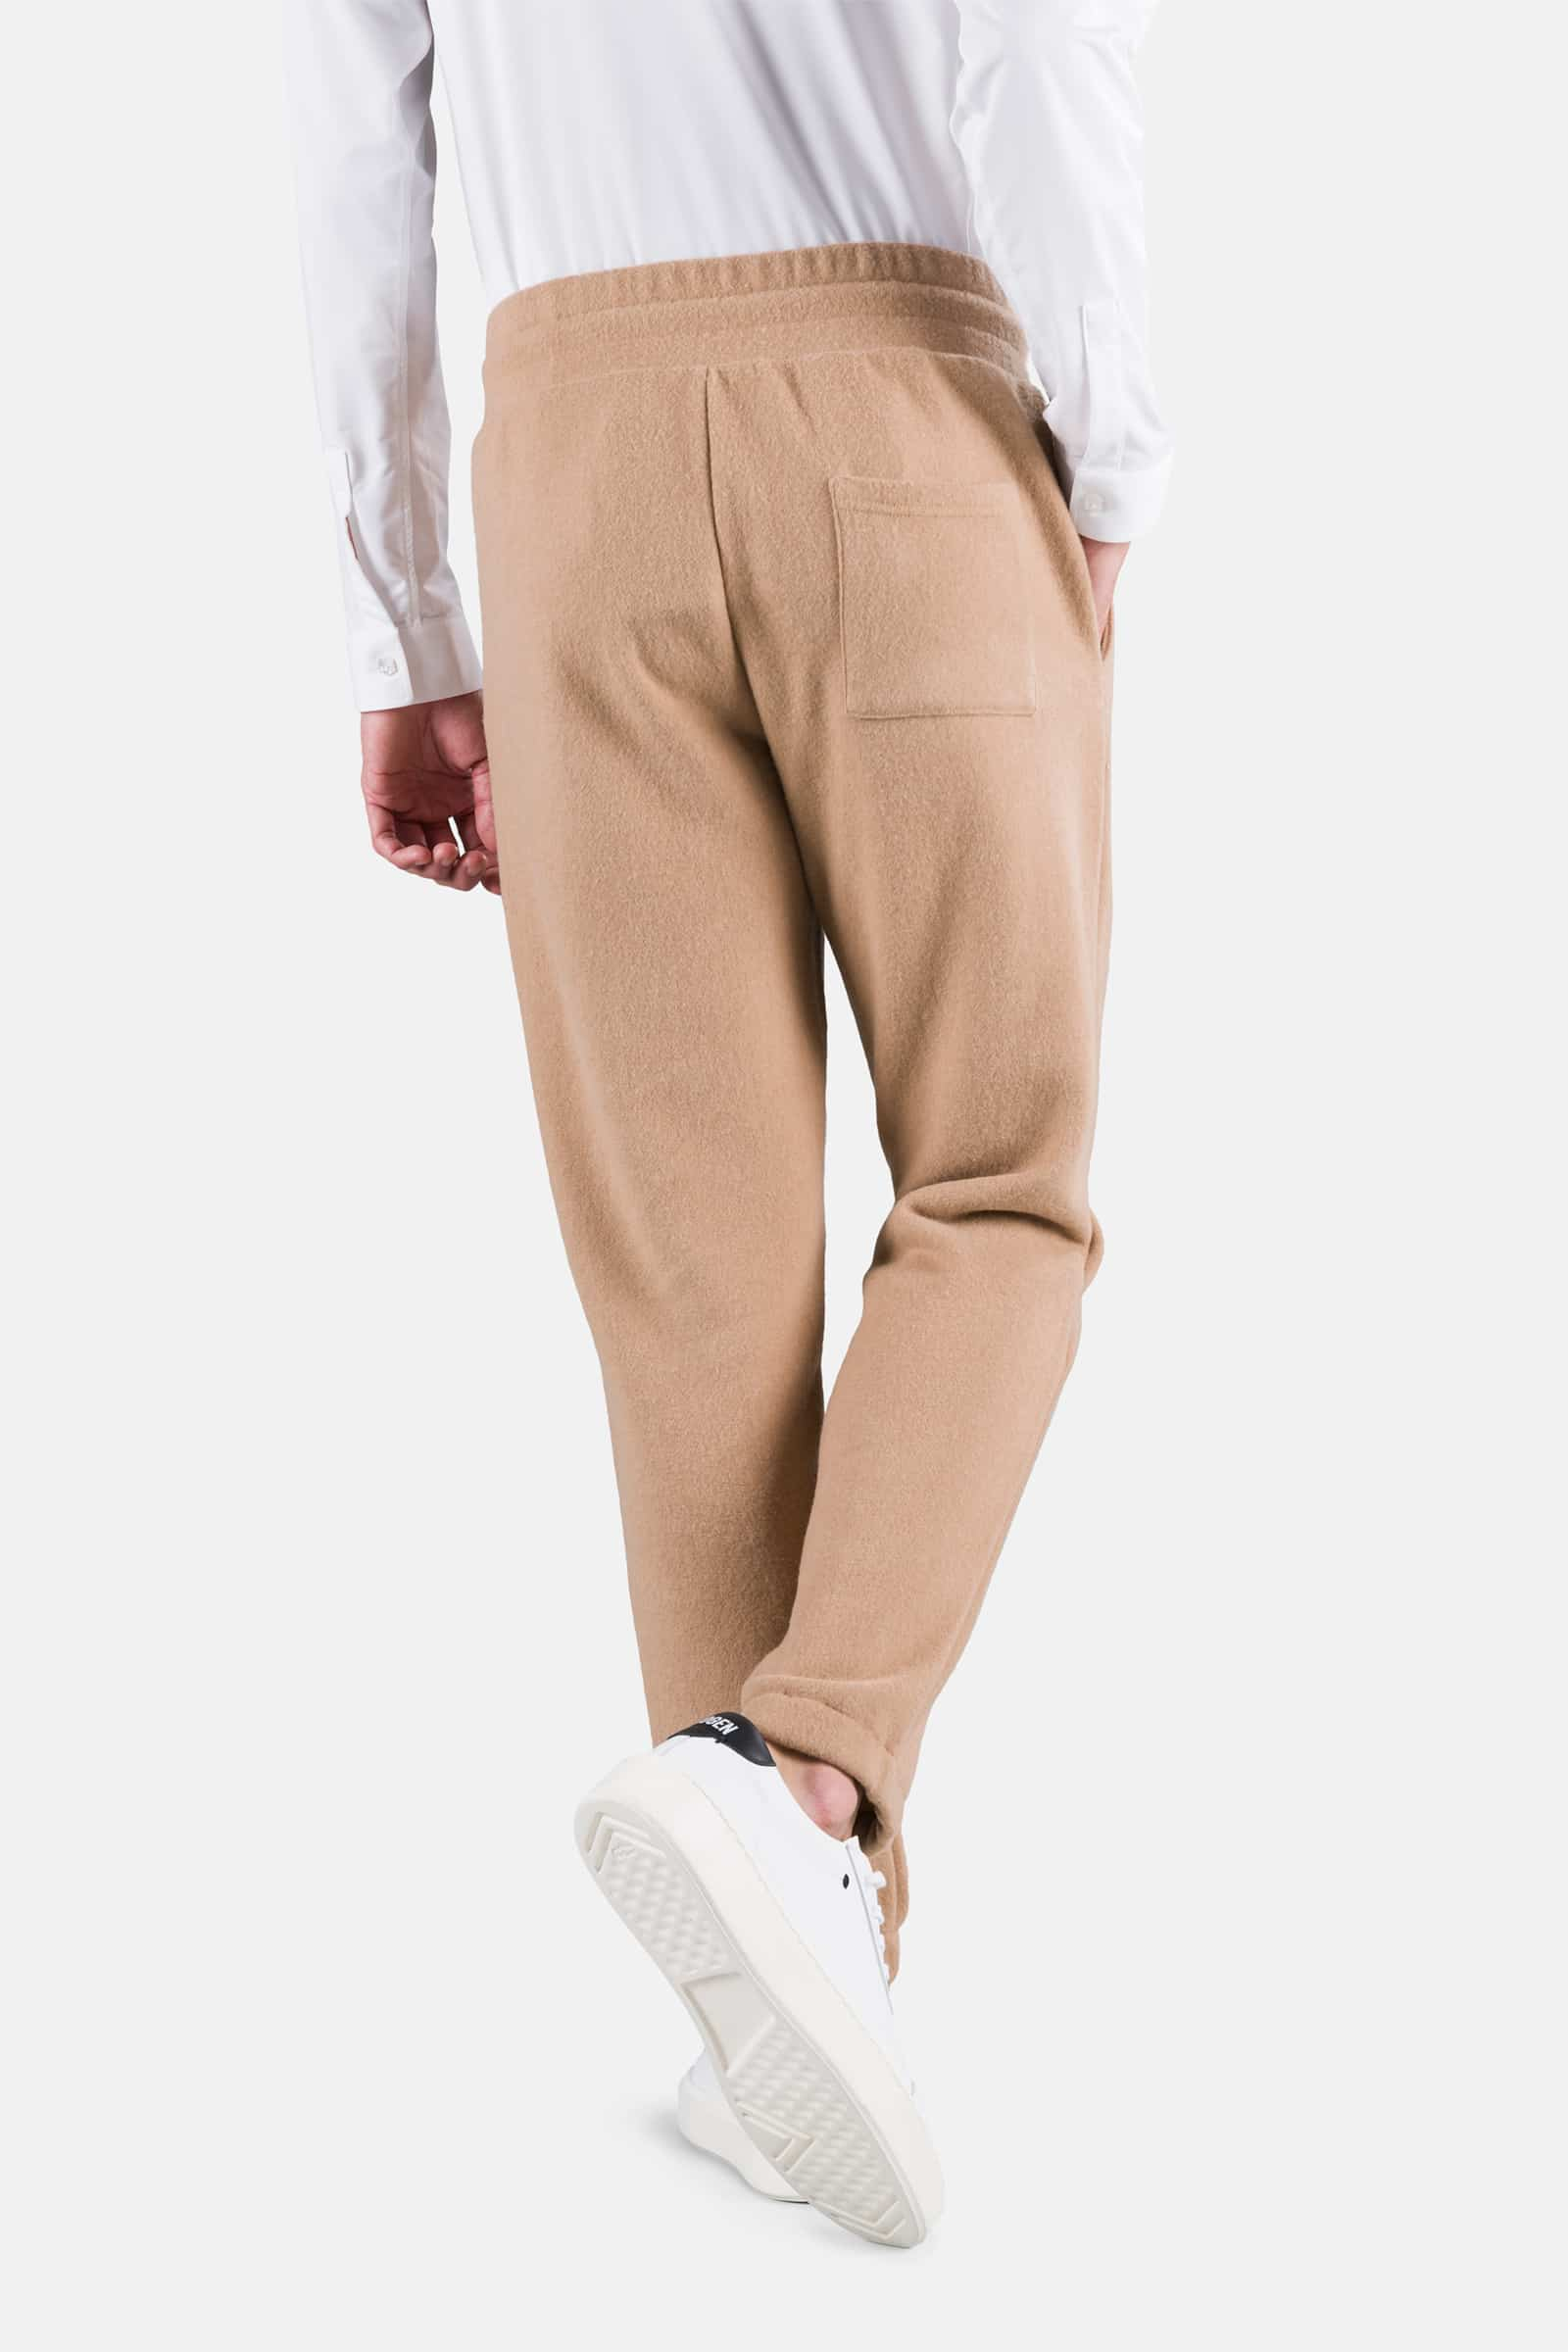 SKULL PANTS - CAMEL - Hydrogen - Luxury Sportwear